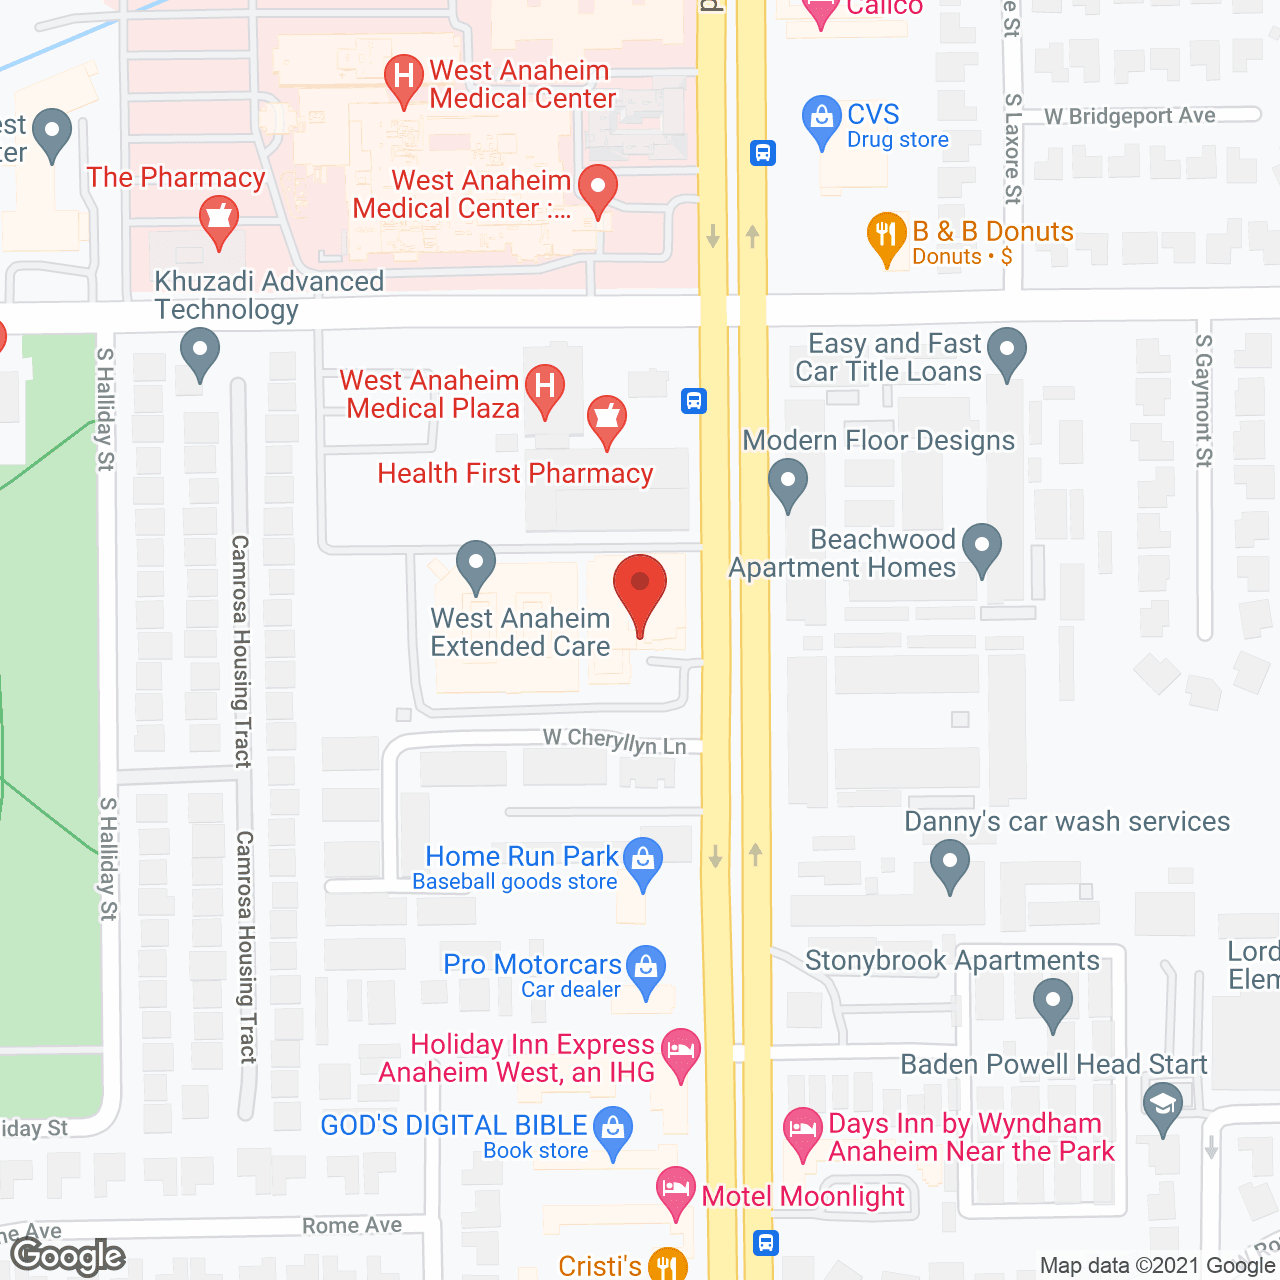 Anaheim Crown Plaza in google map